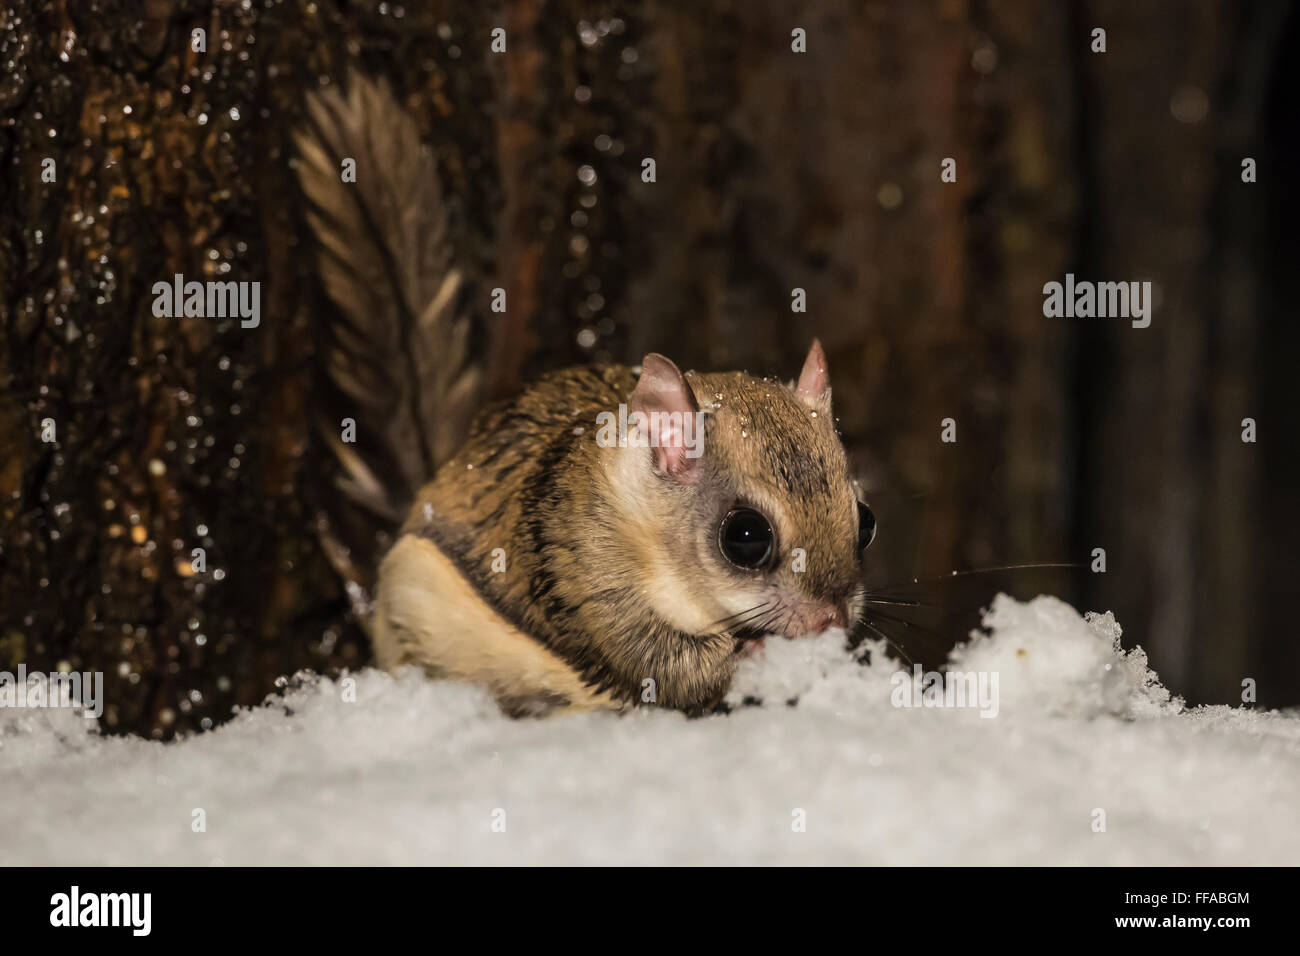 Southern scoiattolo battenti, Glaucomys volans, alimentando sul terreno in una notte invernale nel centro di Michigan, Stati Uniti d'America Foto Stock